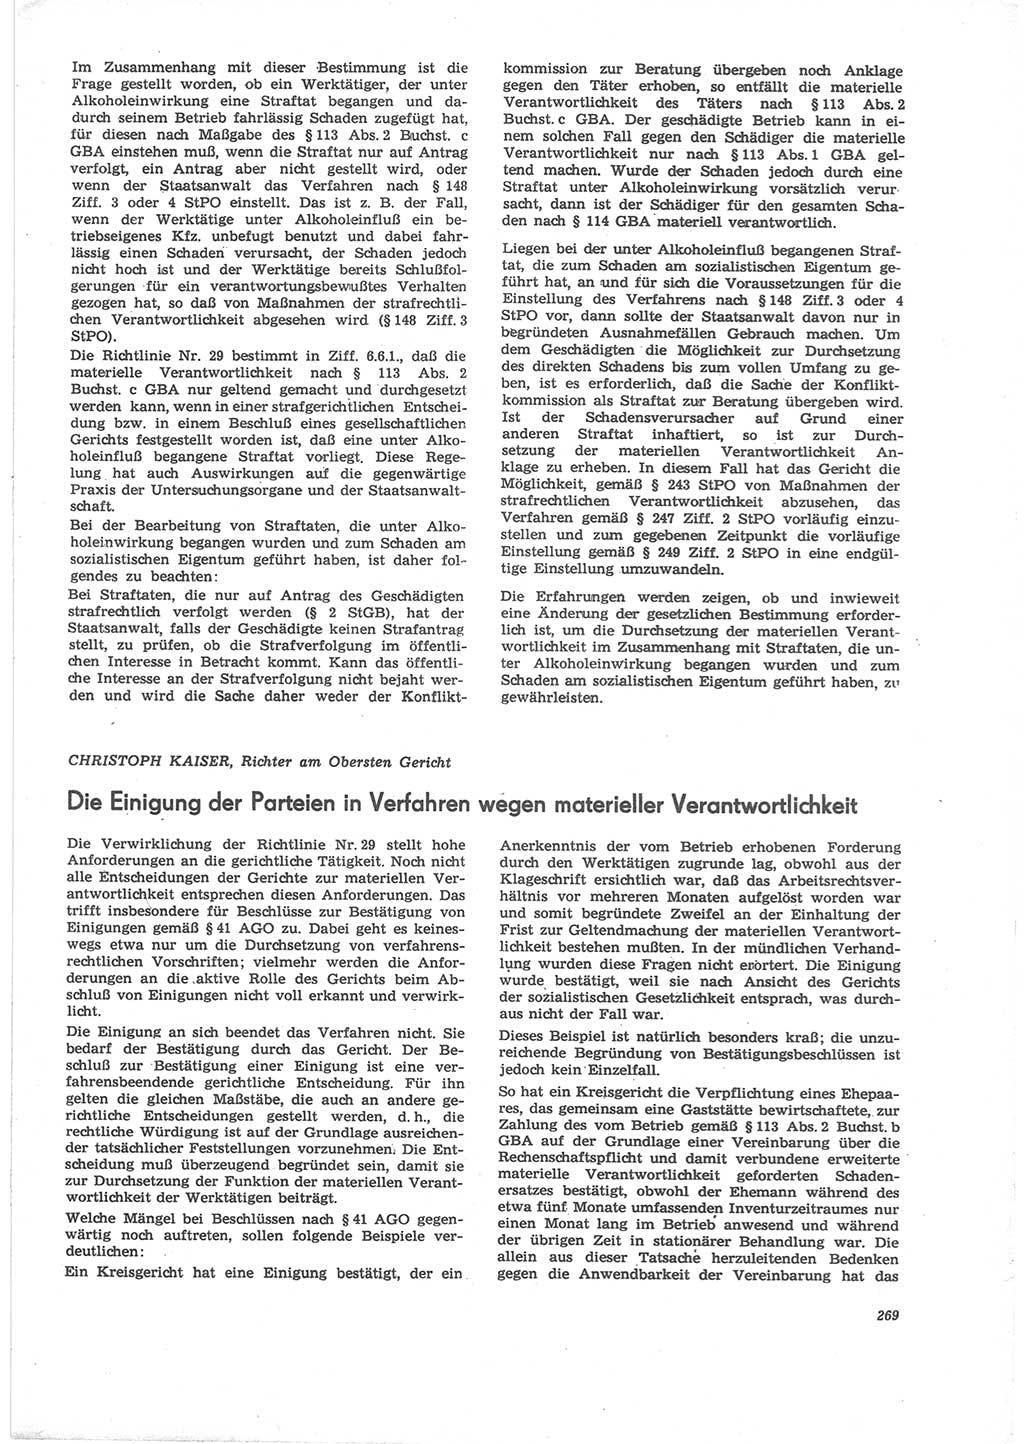 Neue Justiz (NJ), Zeitschrift für Recht und Rechtswissenschaft [Deutsche Demokratische Republik (DDR)], 24. Jahrgang 1970, Seite 269 (NJ DDR 1970, S. 269)